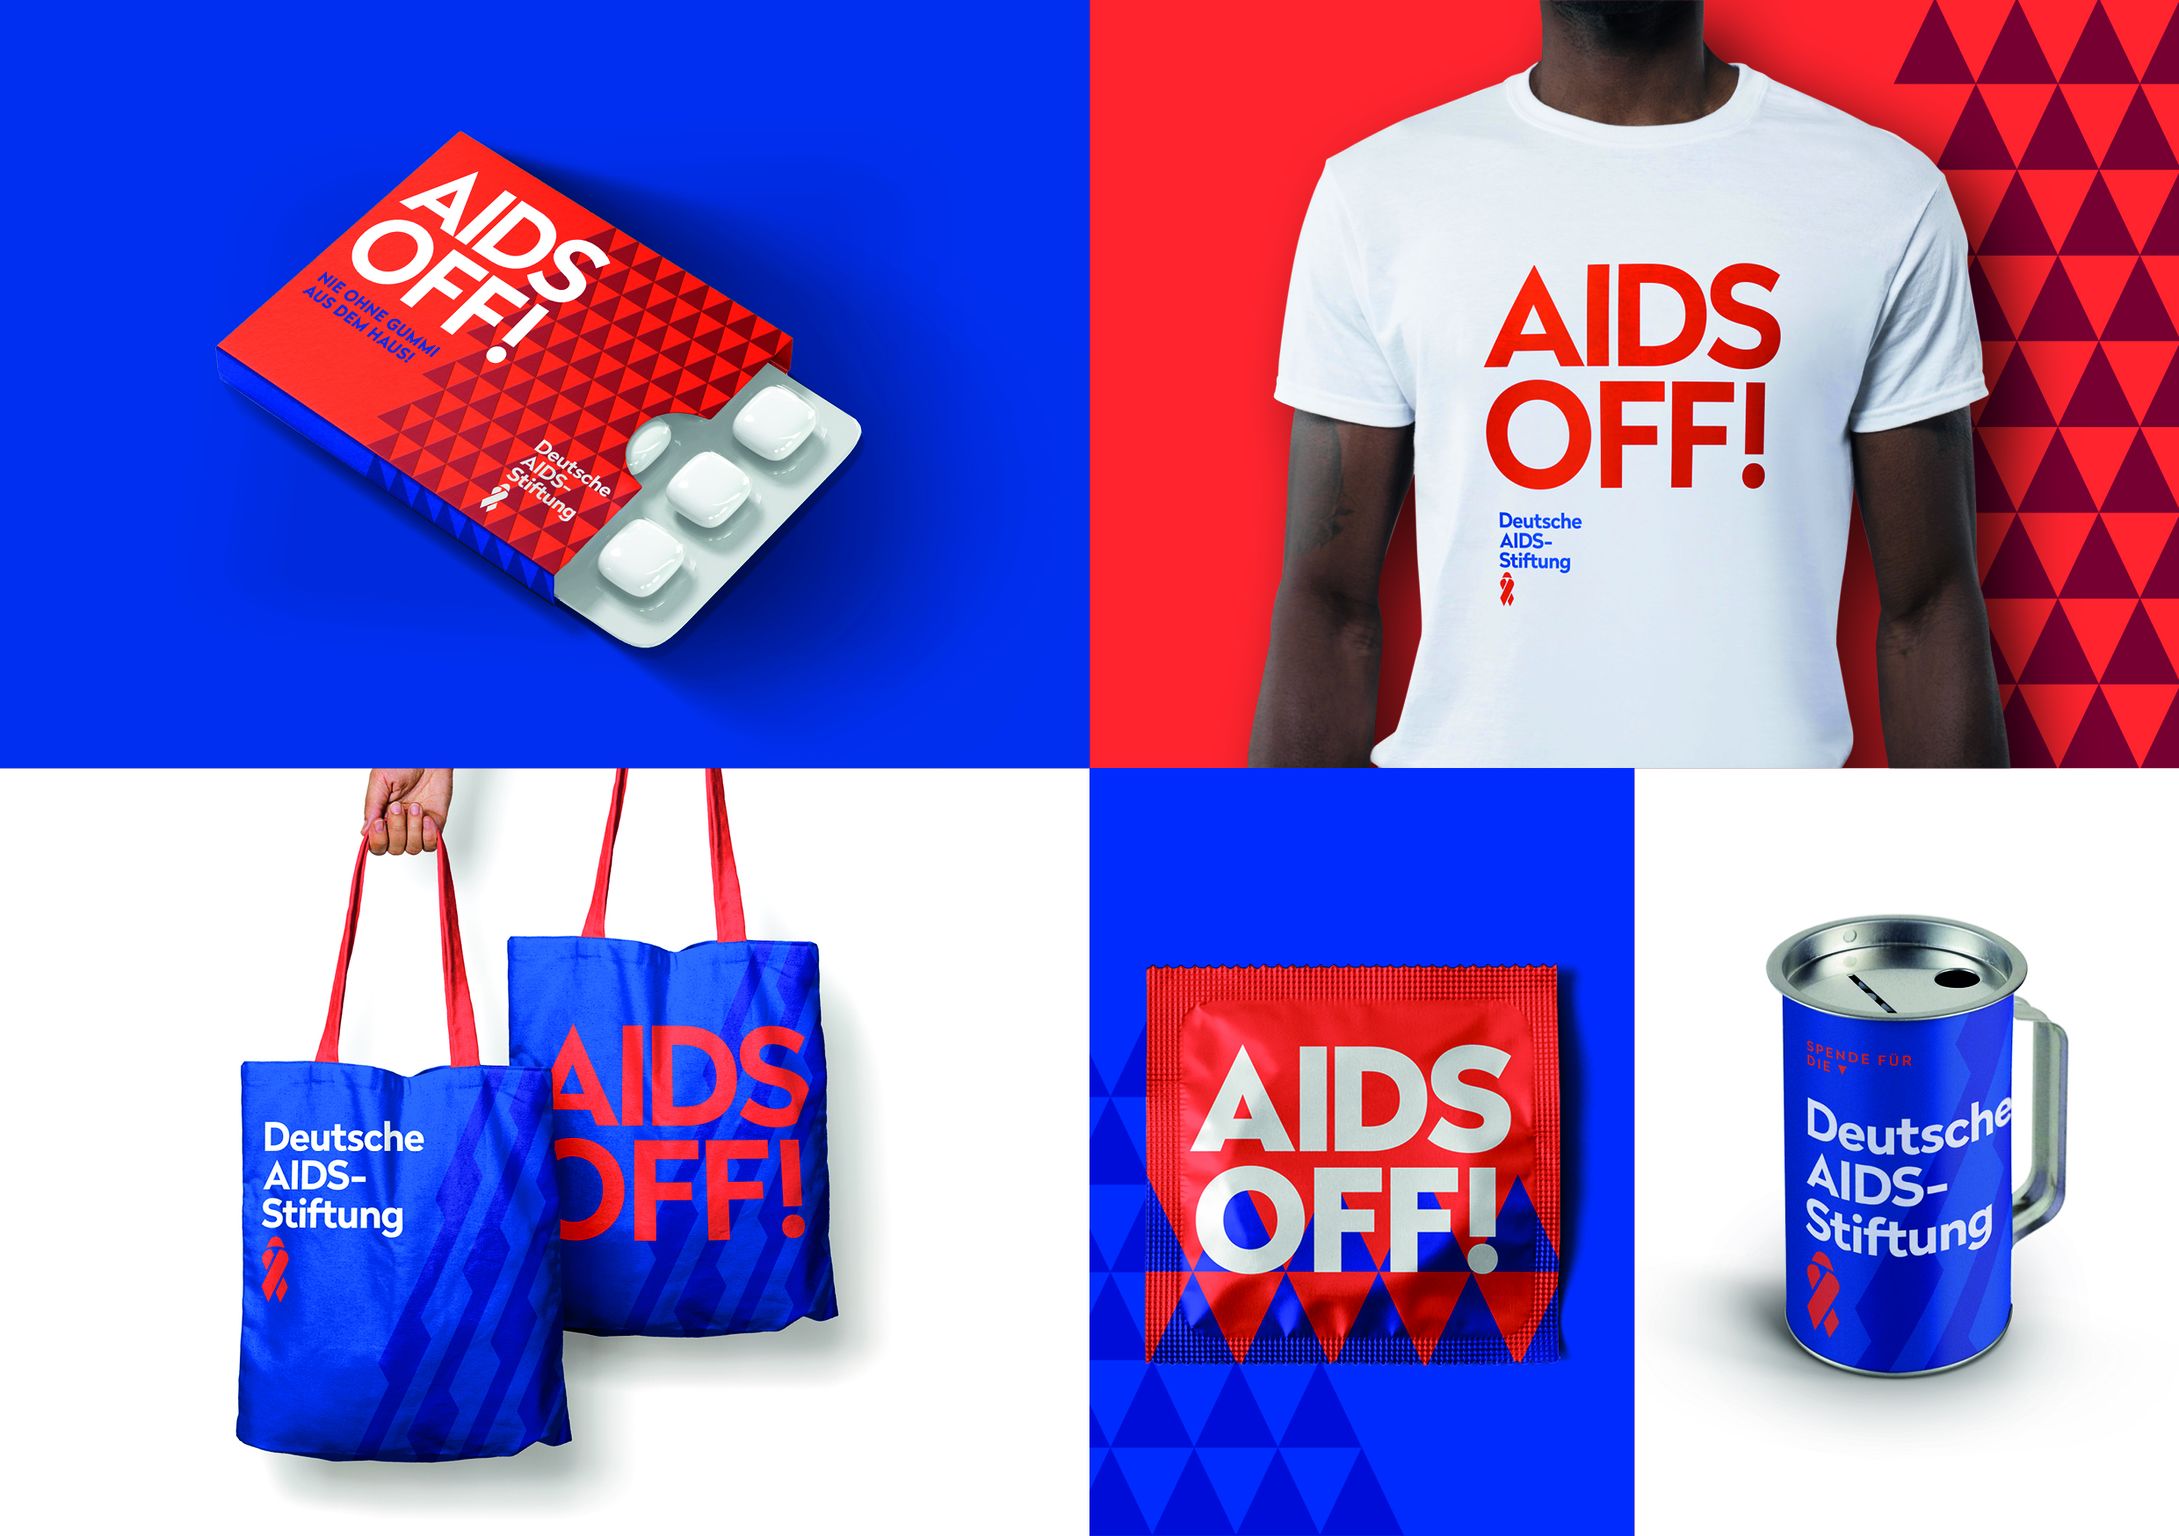 Corporate Design Deutsche AIDS-Stiftung